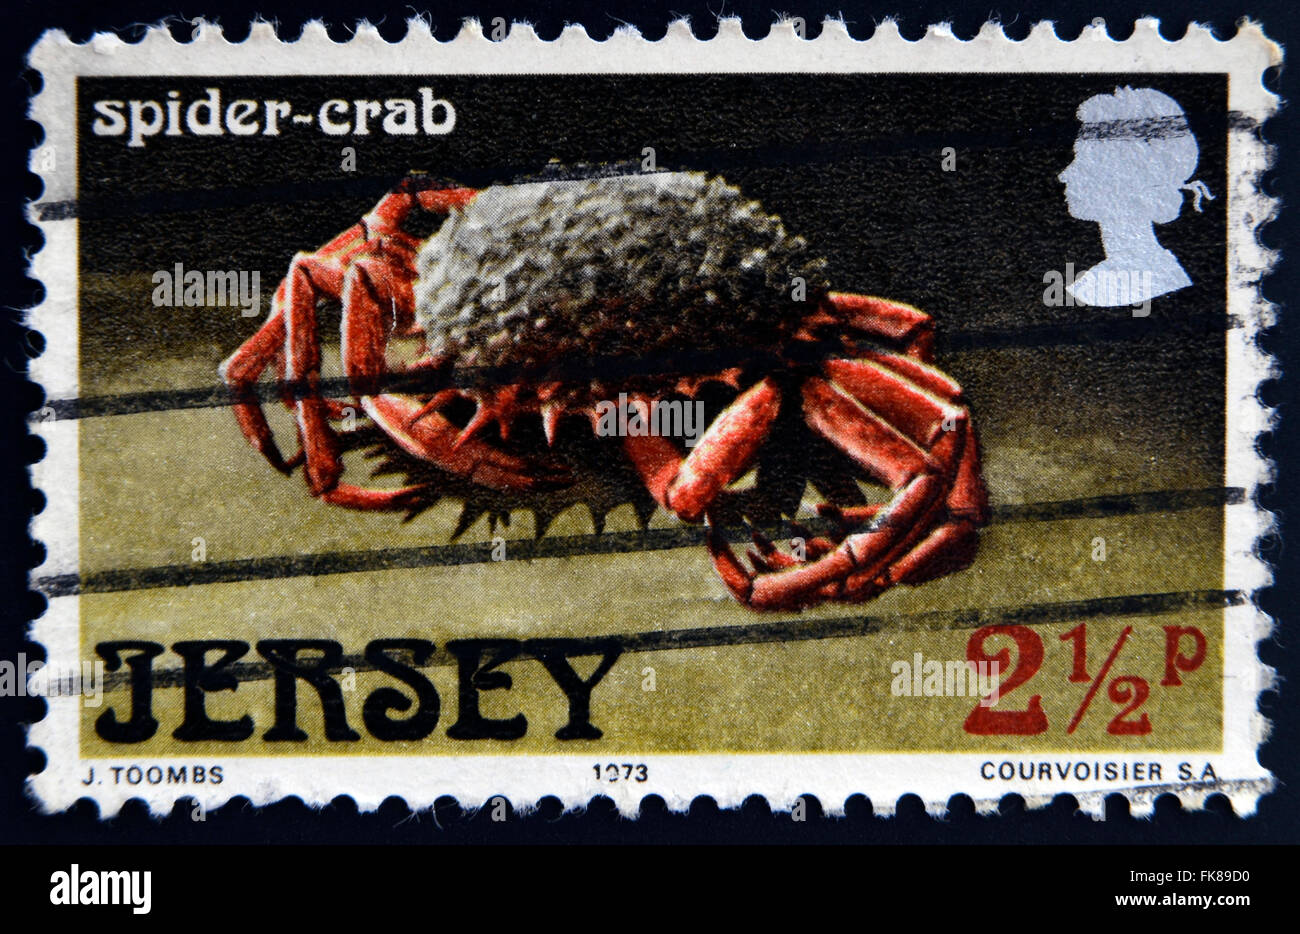 JERSEY - VERS 1973 : un timbre imprimé en jersey montre une araignée-crabe, vers 1973 Banque D'Images